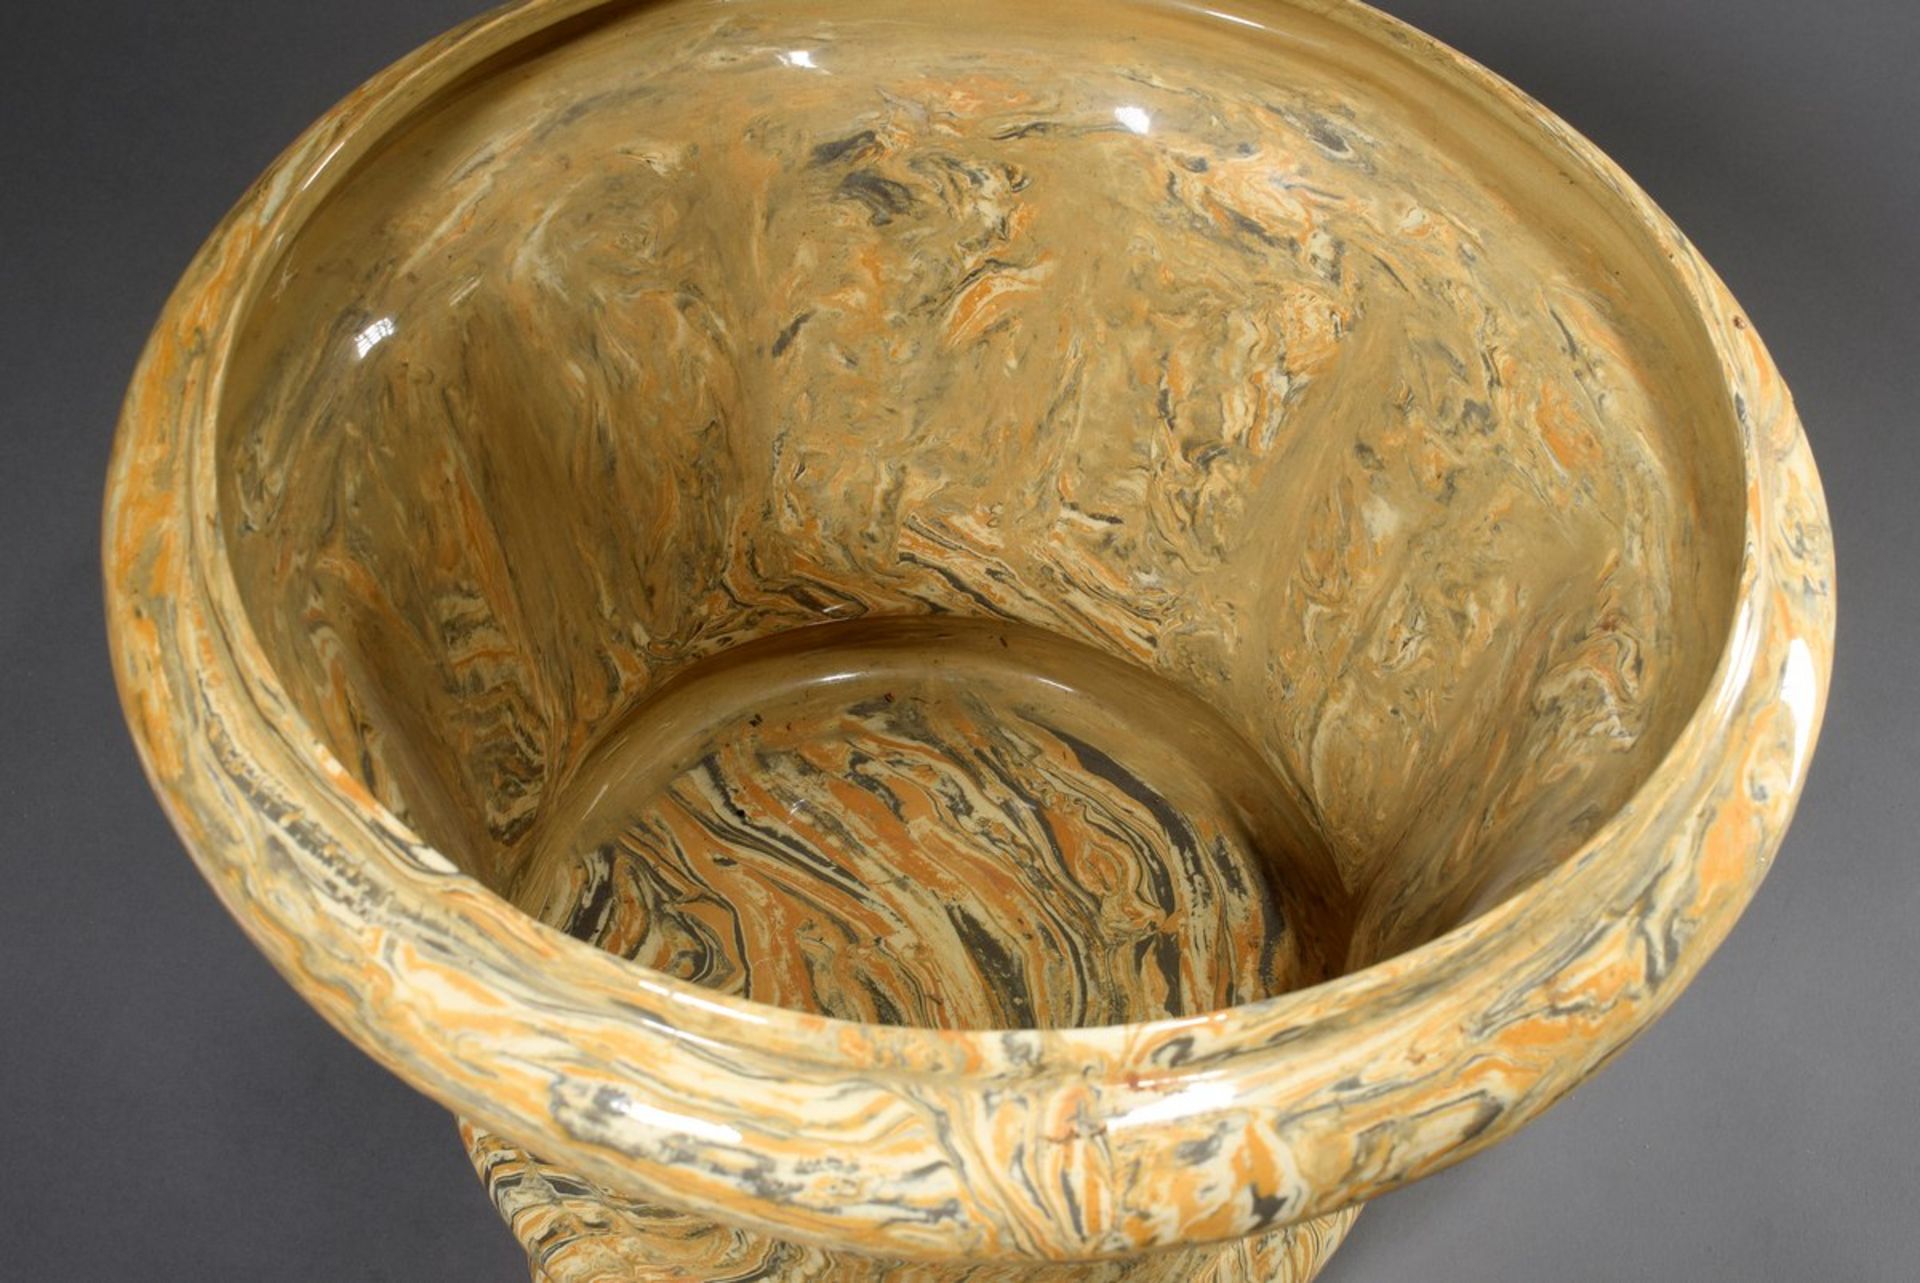 Marmorierter Keramik Übertopf in Grau/Orange/Beige mit mehreckigem Korpus, wohl Frankreich um - Bild 2 aus 3